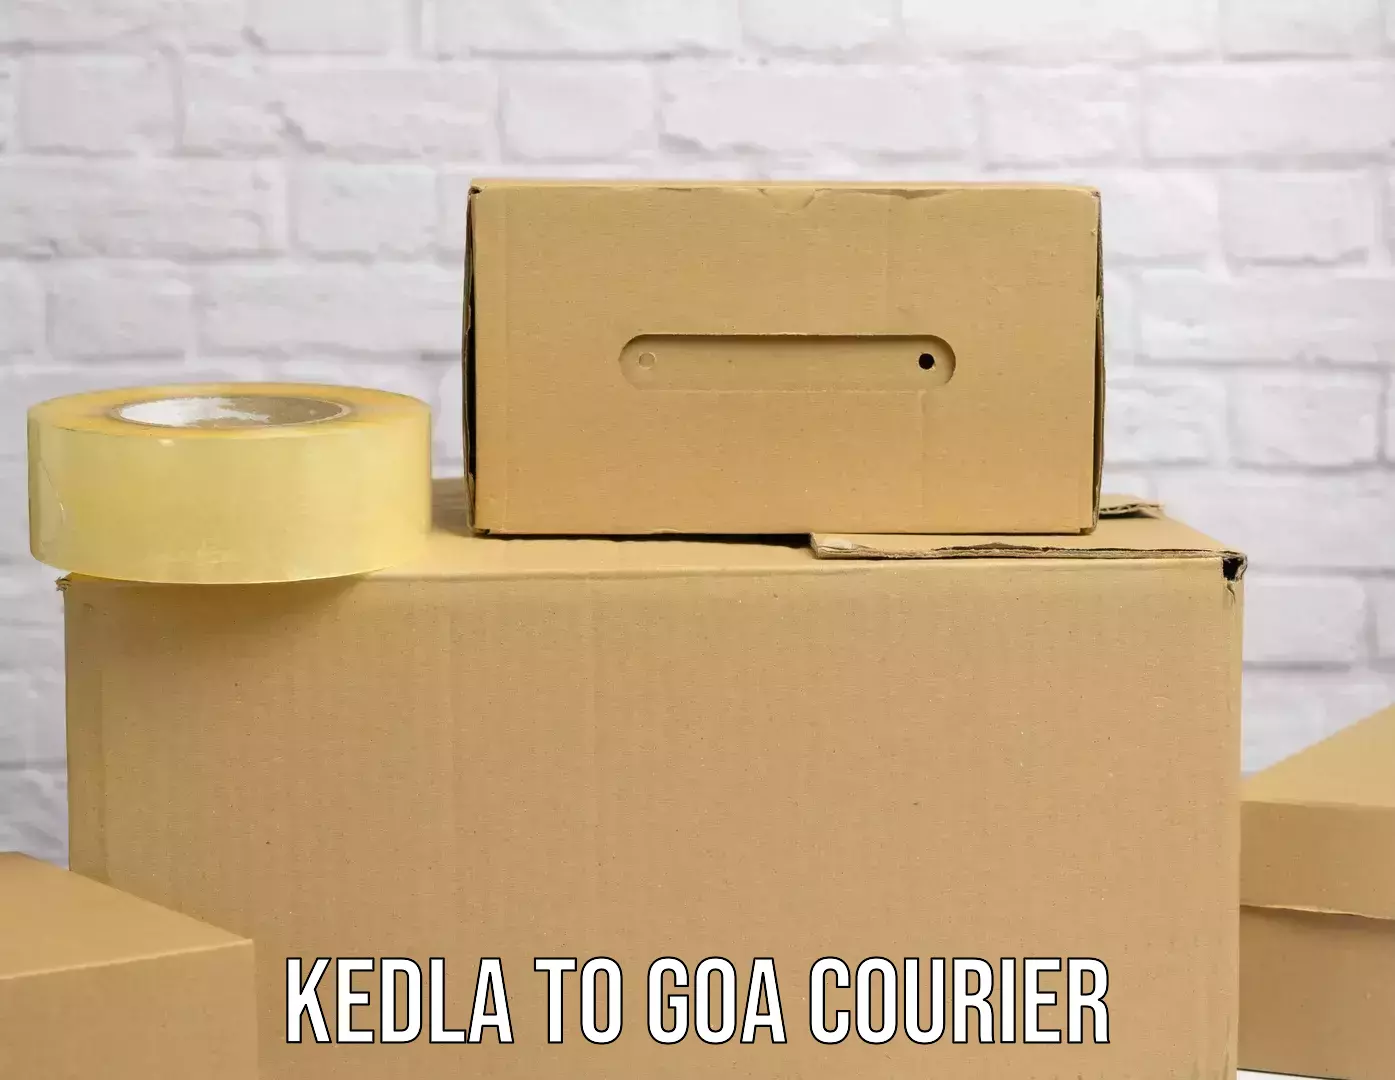 Easy return solutions Kedla to Goa